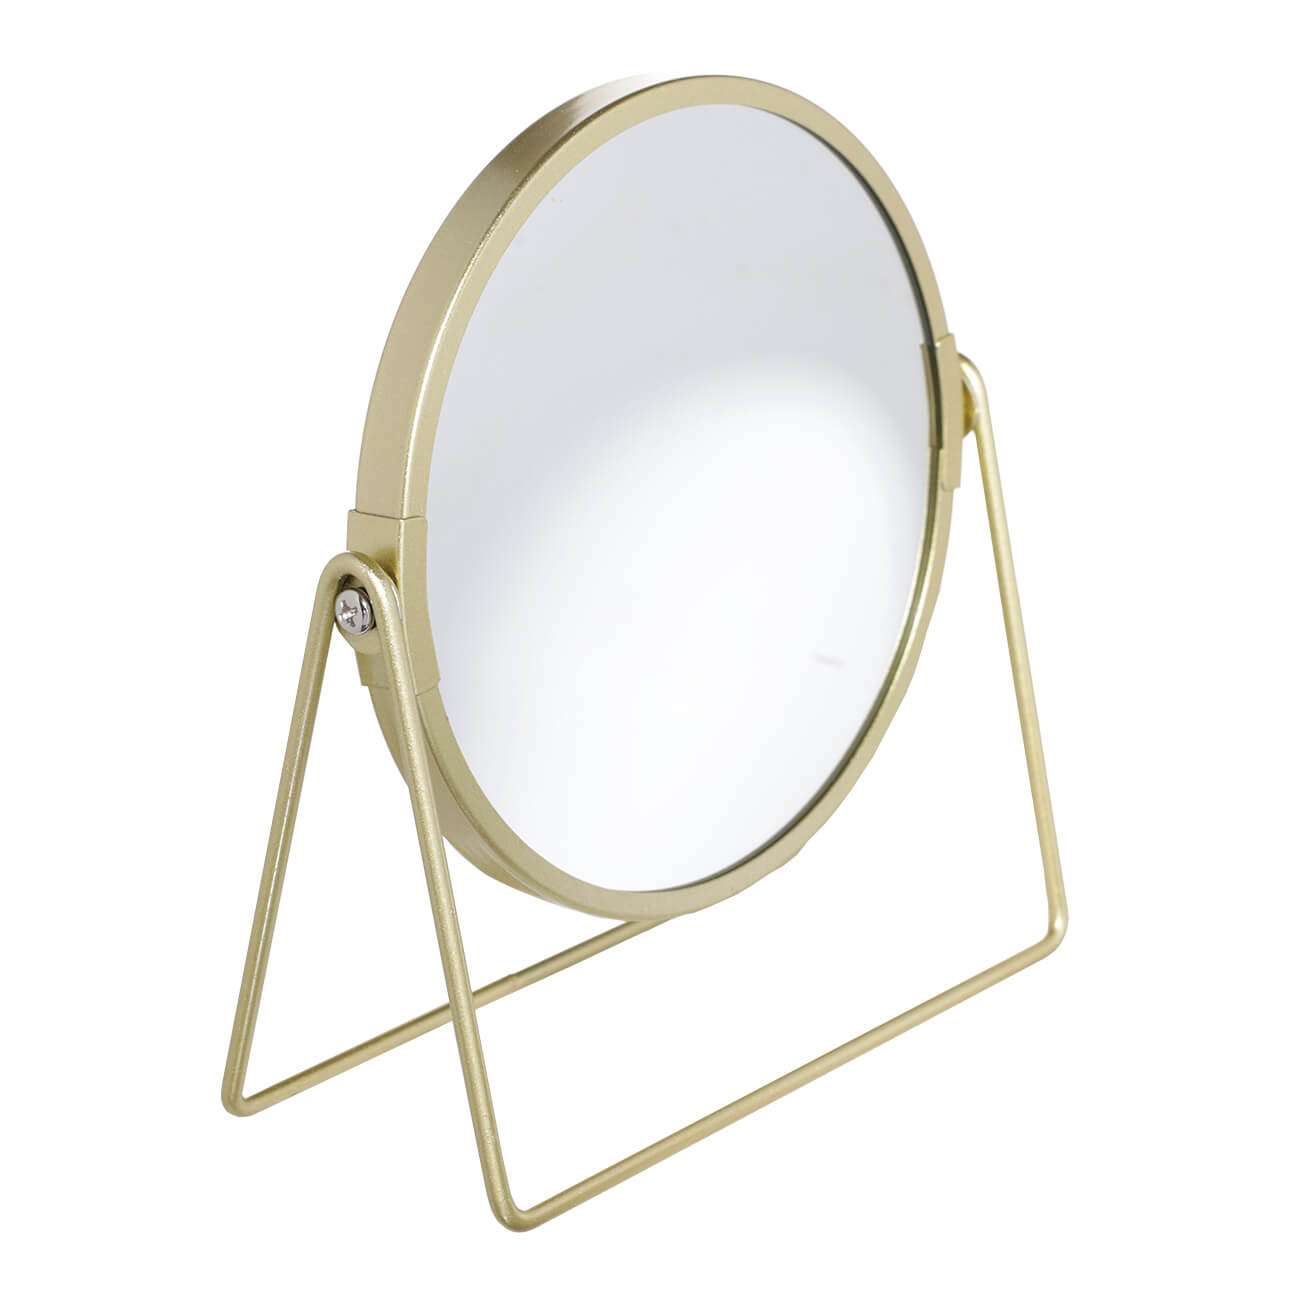 Зеркало настольное, 18 см, двустороннее, металл, круглое, золотистое, Freya зеркало карманное 7 см двустороннее металл золотистое freya